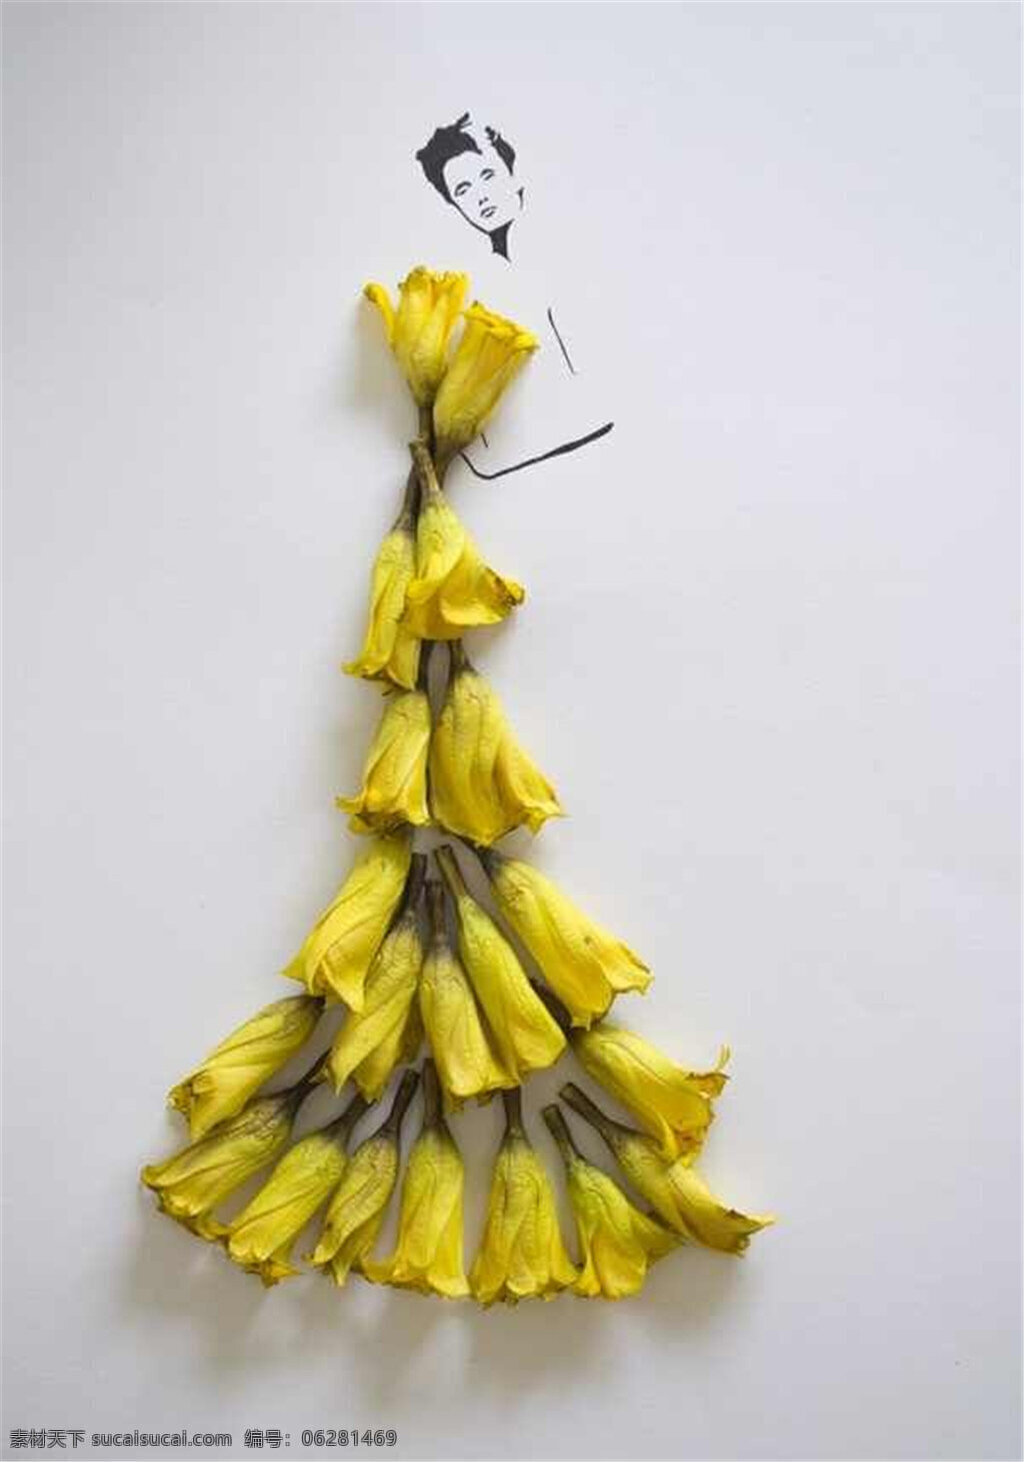 黄色 花朵 灵感 长裙 设计图 服装设计 时尚女装 女装设计 效果图 短裙 服装 服装效果图 花式灵感 花朵服装 花瓣